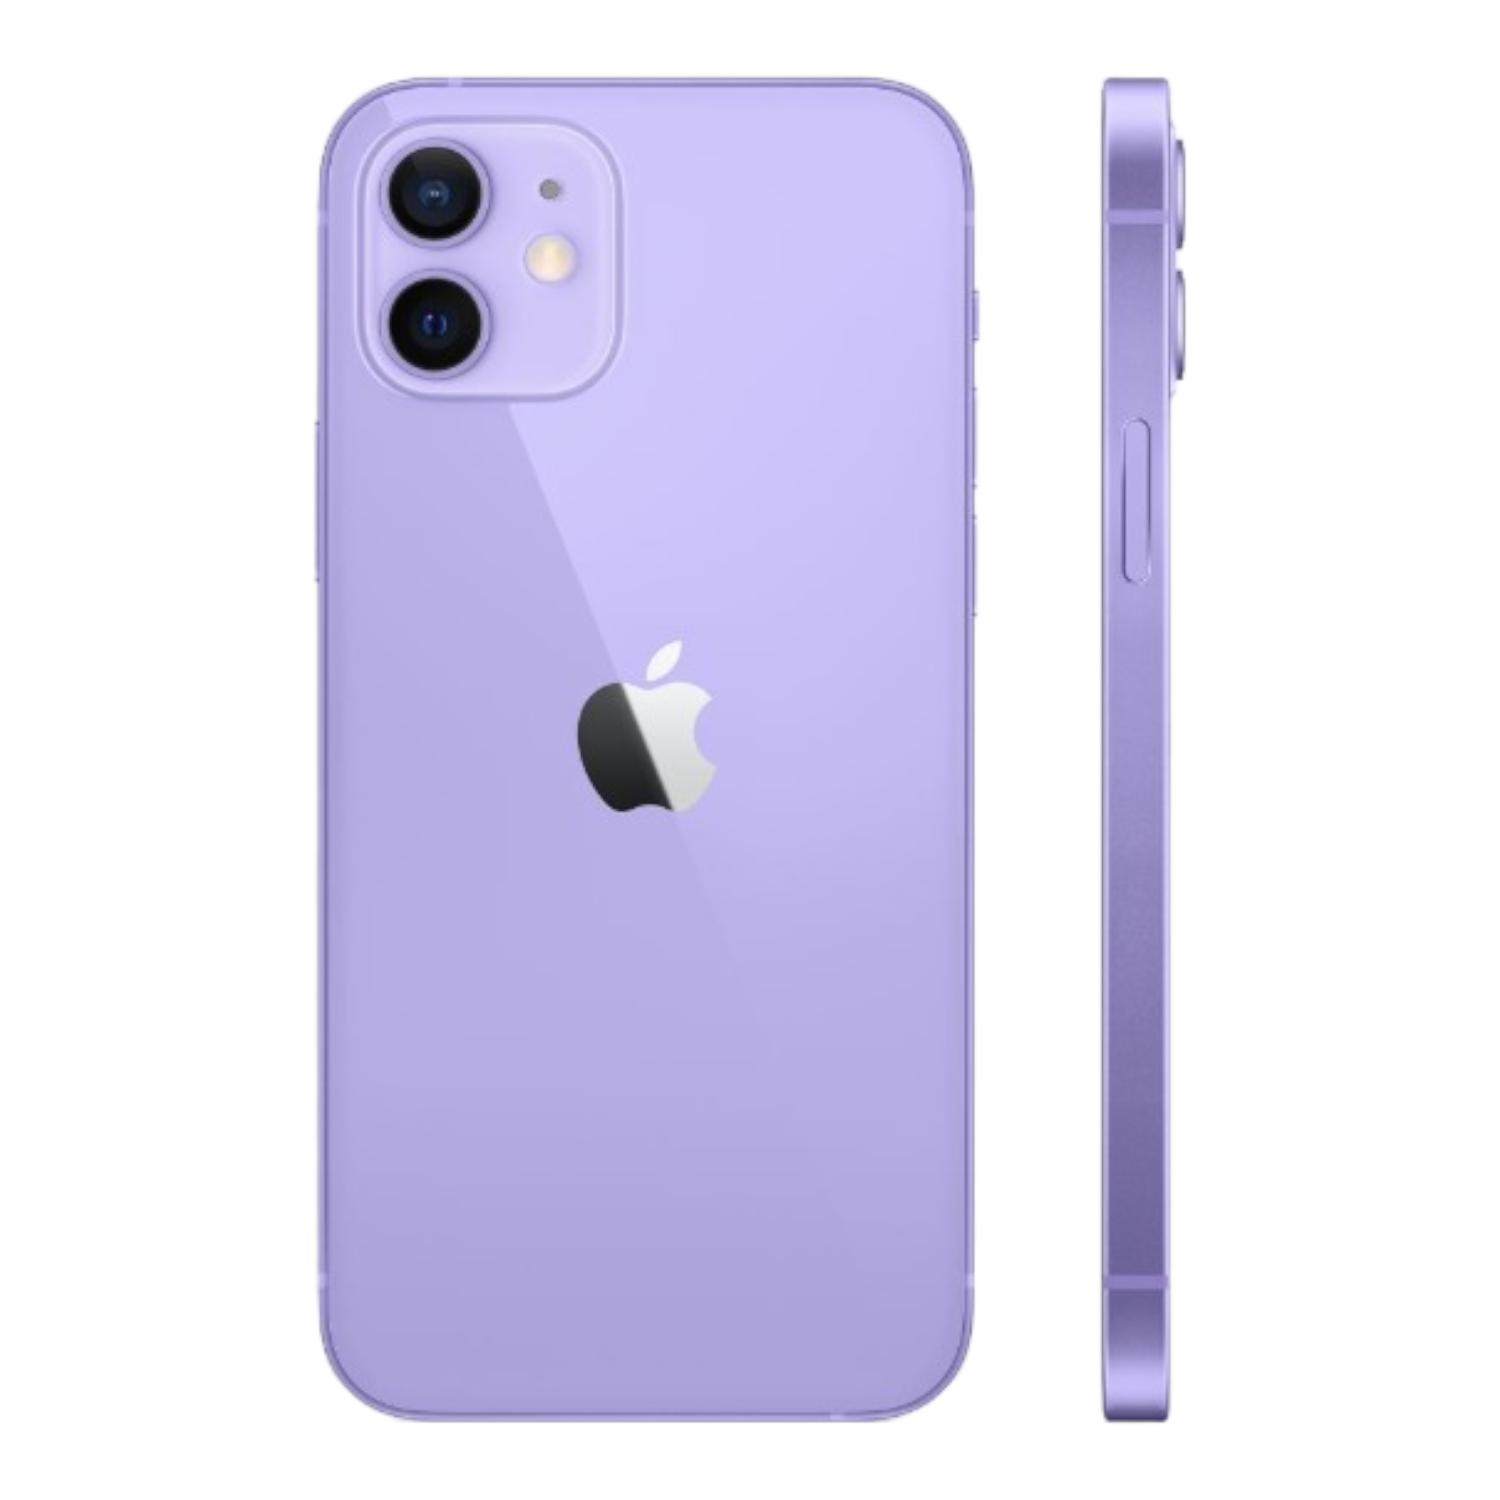 Apple Iphone 12 128GB Celular Liberado (Reacondicionado) Color Purpura